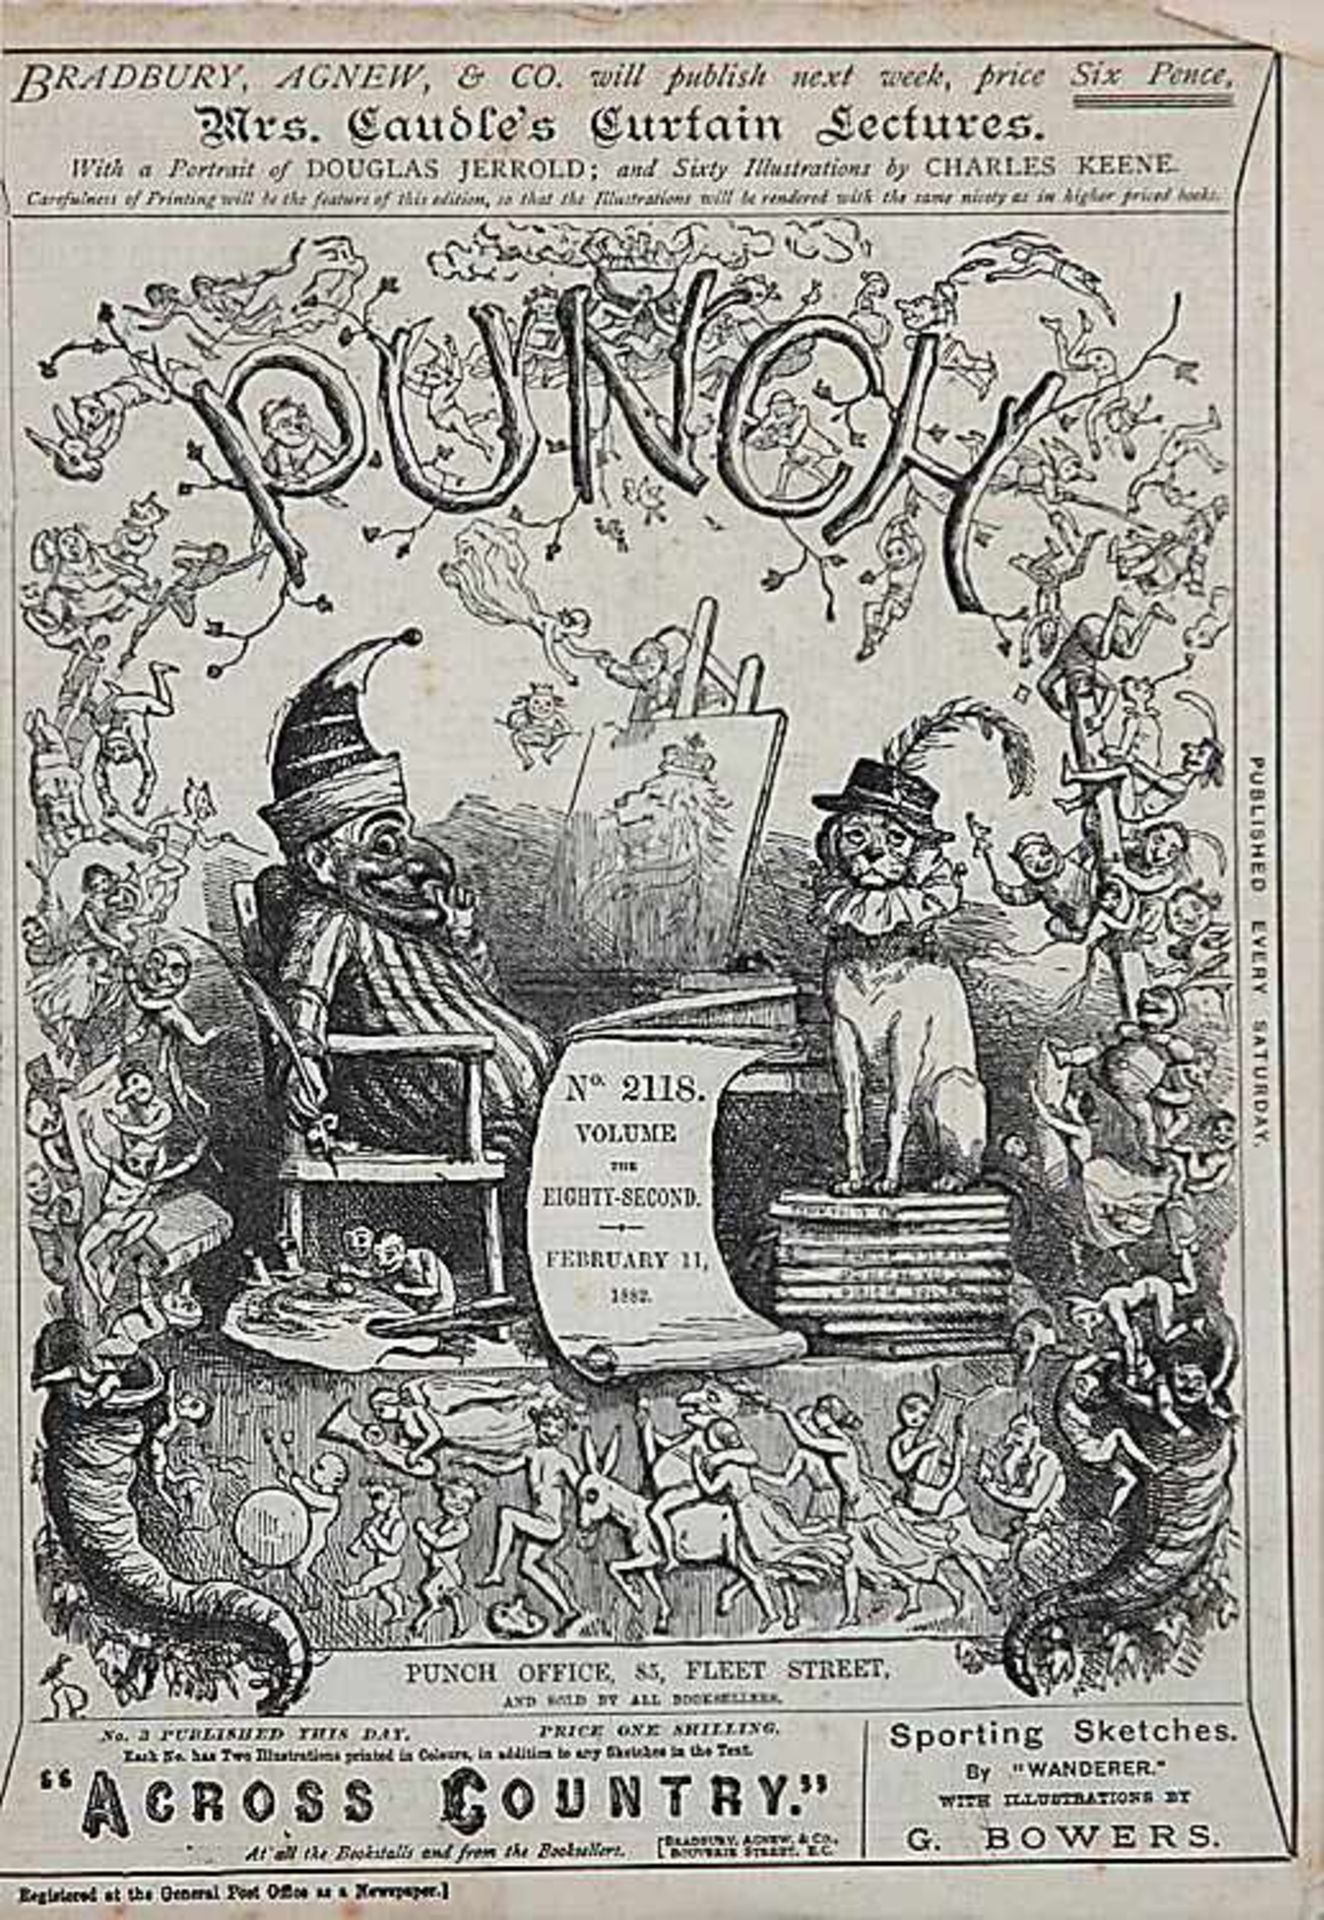 Zeitschriftenseite"Punch", Nr. 2118 vom 11. Februar 1882. Ca. 28,5 x 19,8 cm (Bildausschnitt).